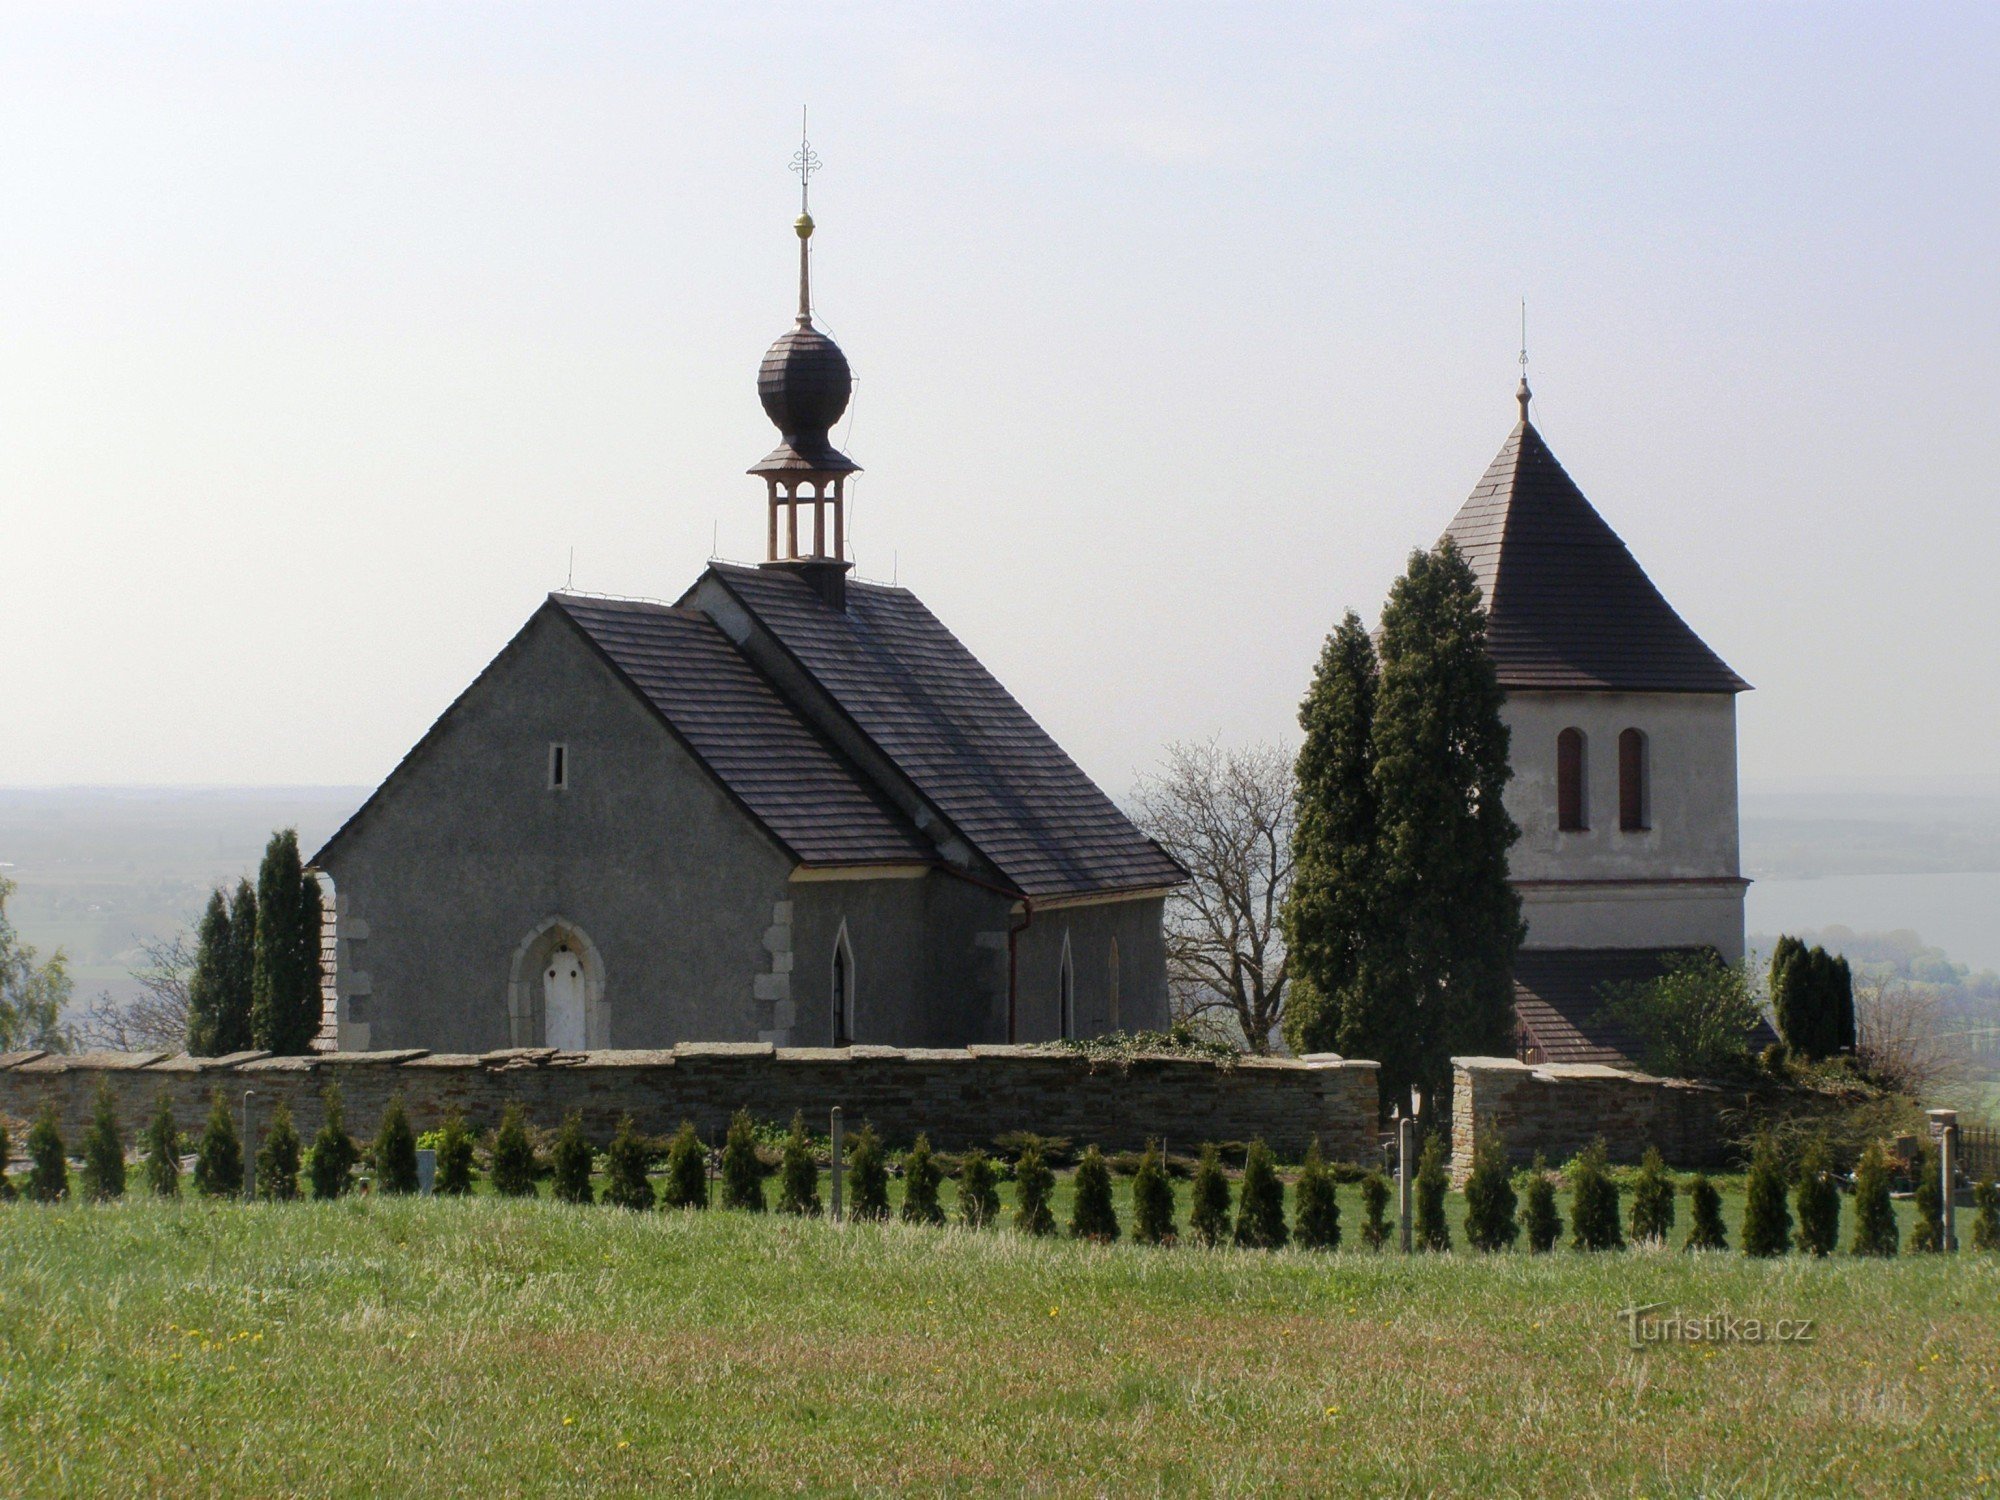 Václavice - biserica Sf. Wenceslas cu clopotnița